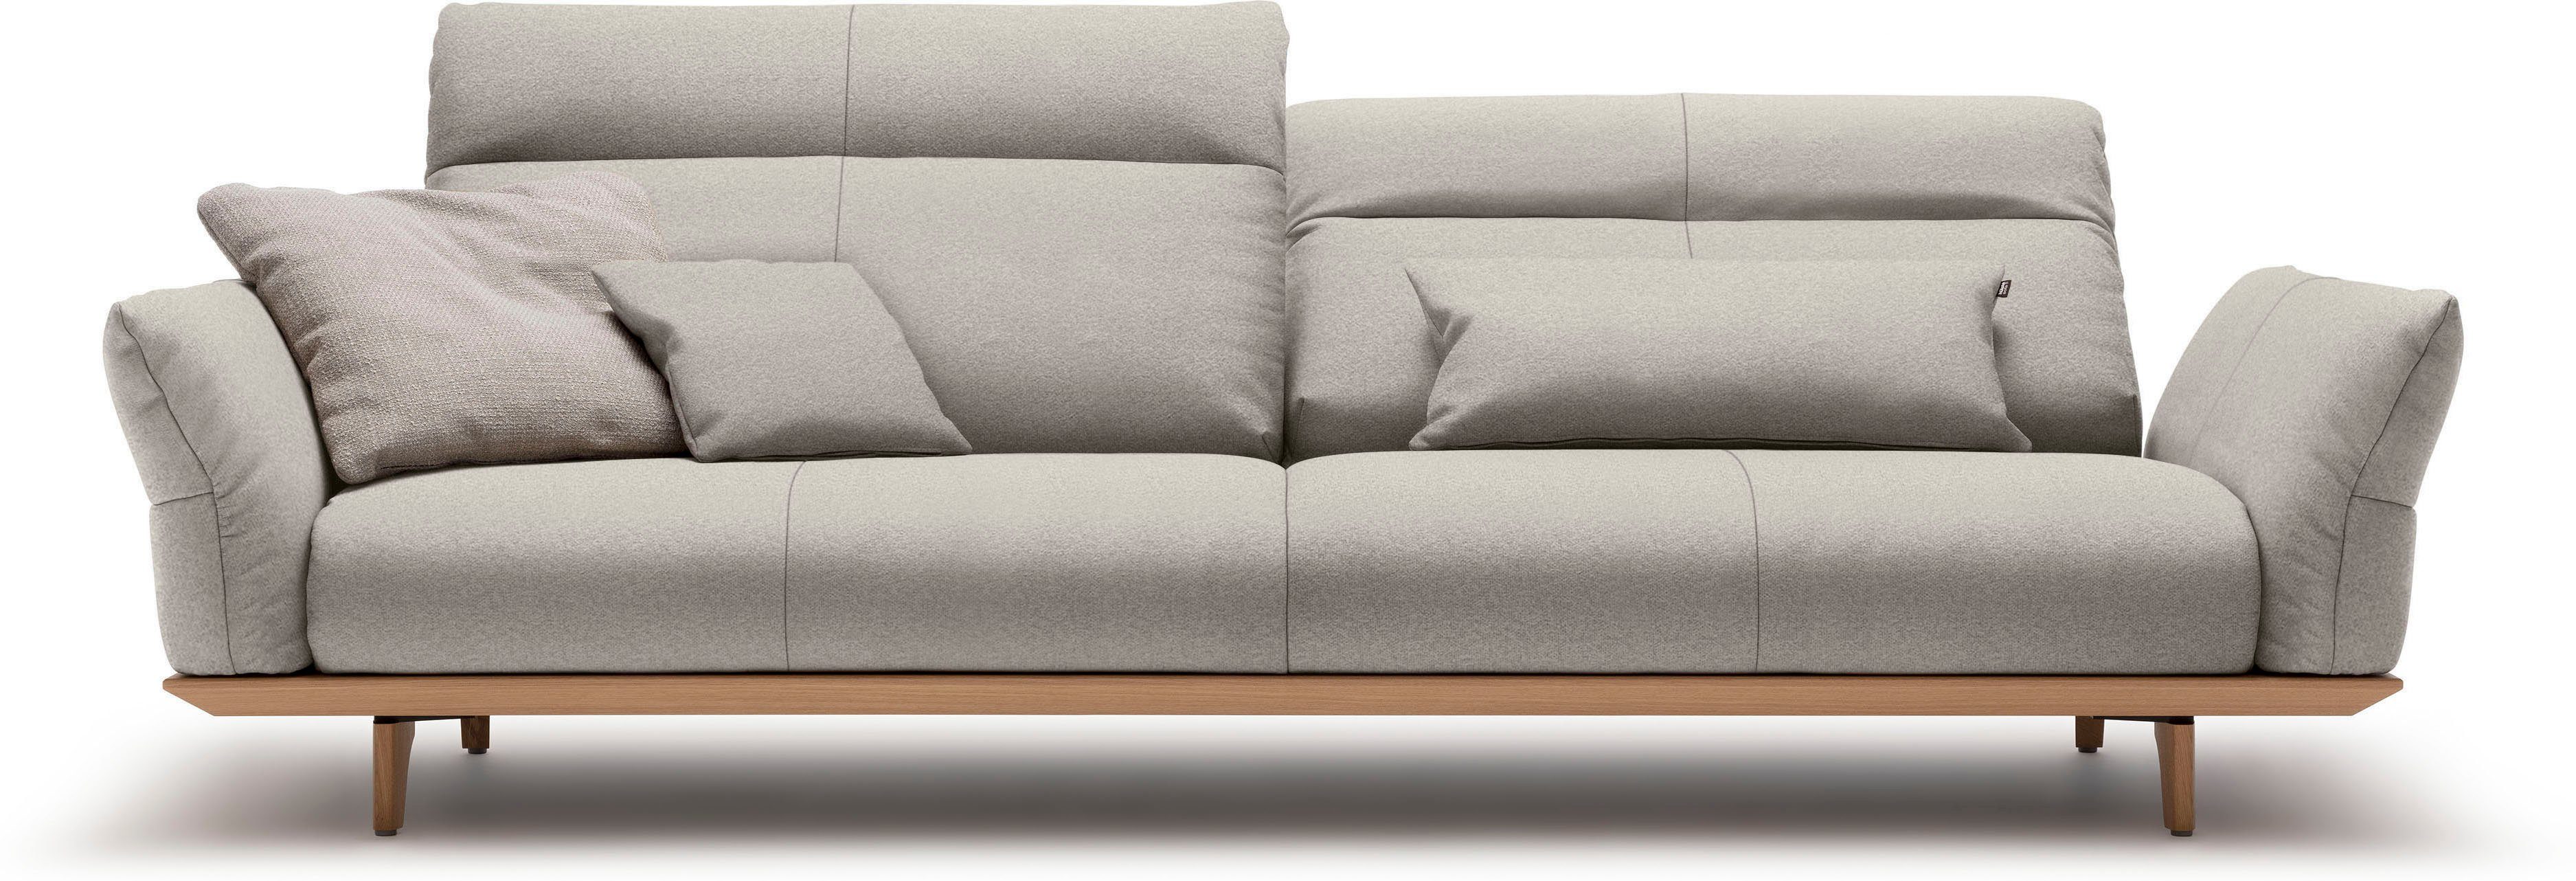 hülsta sofa 4-Sitzer hs.460, Sockel in Eiche, Füße Eiche natur, Breite 248 cm | Einzelsofas